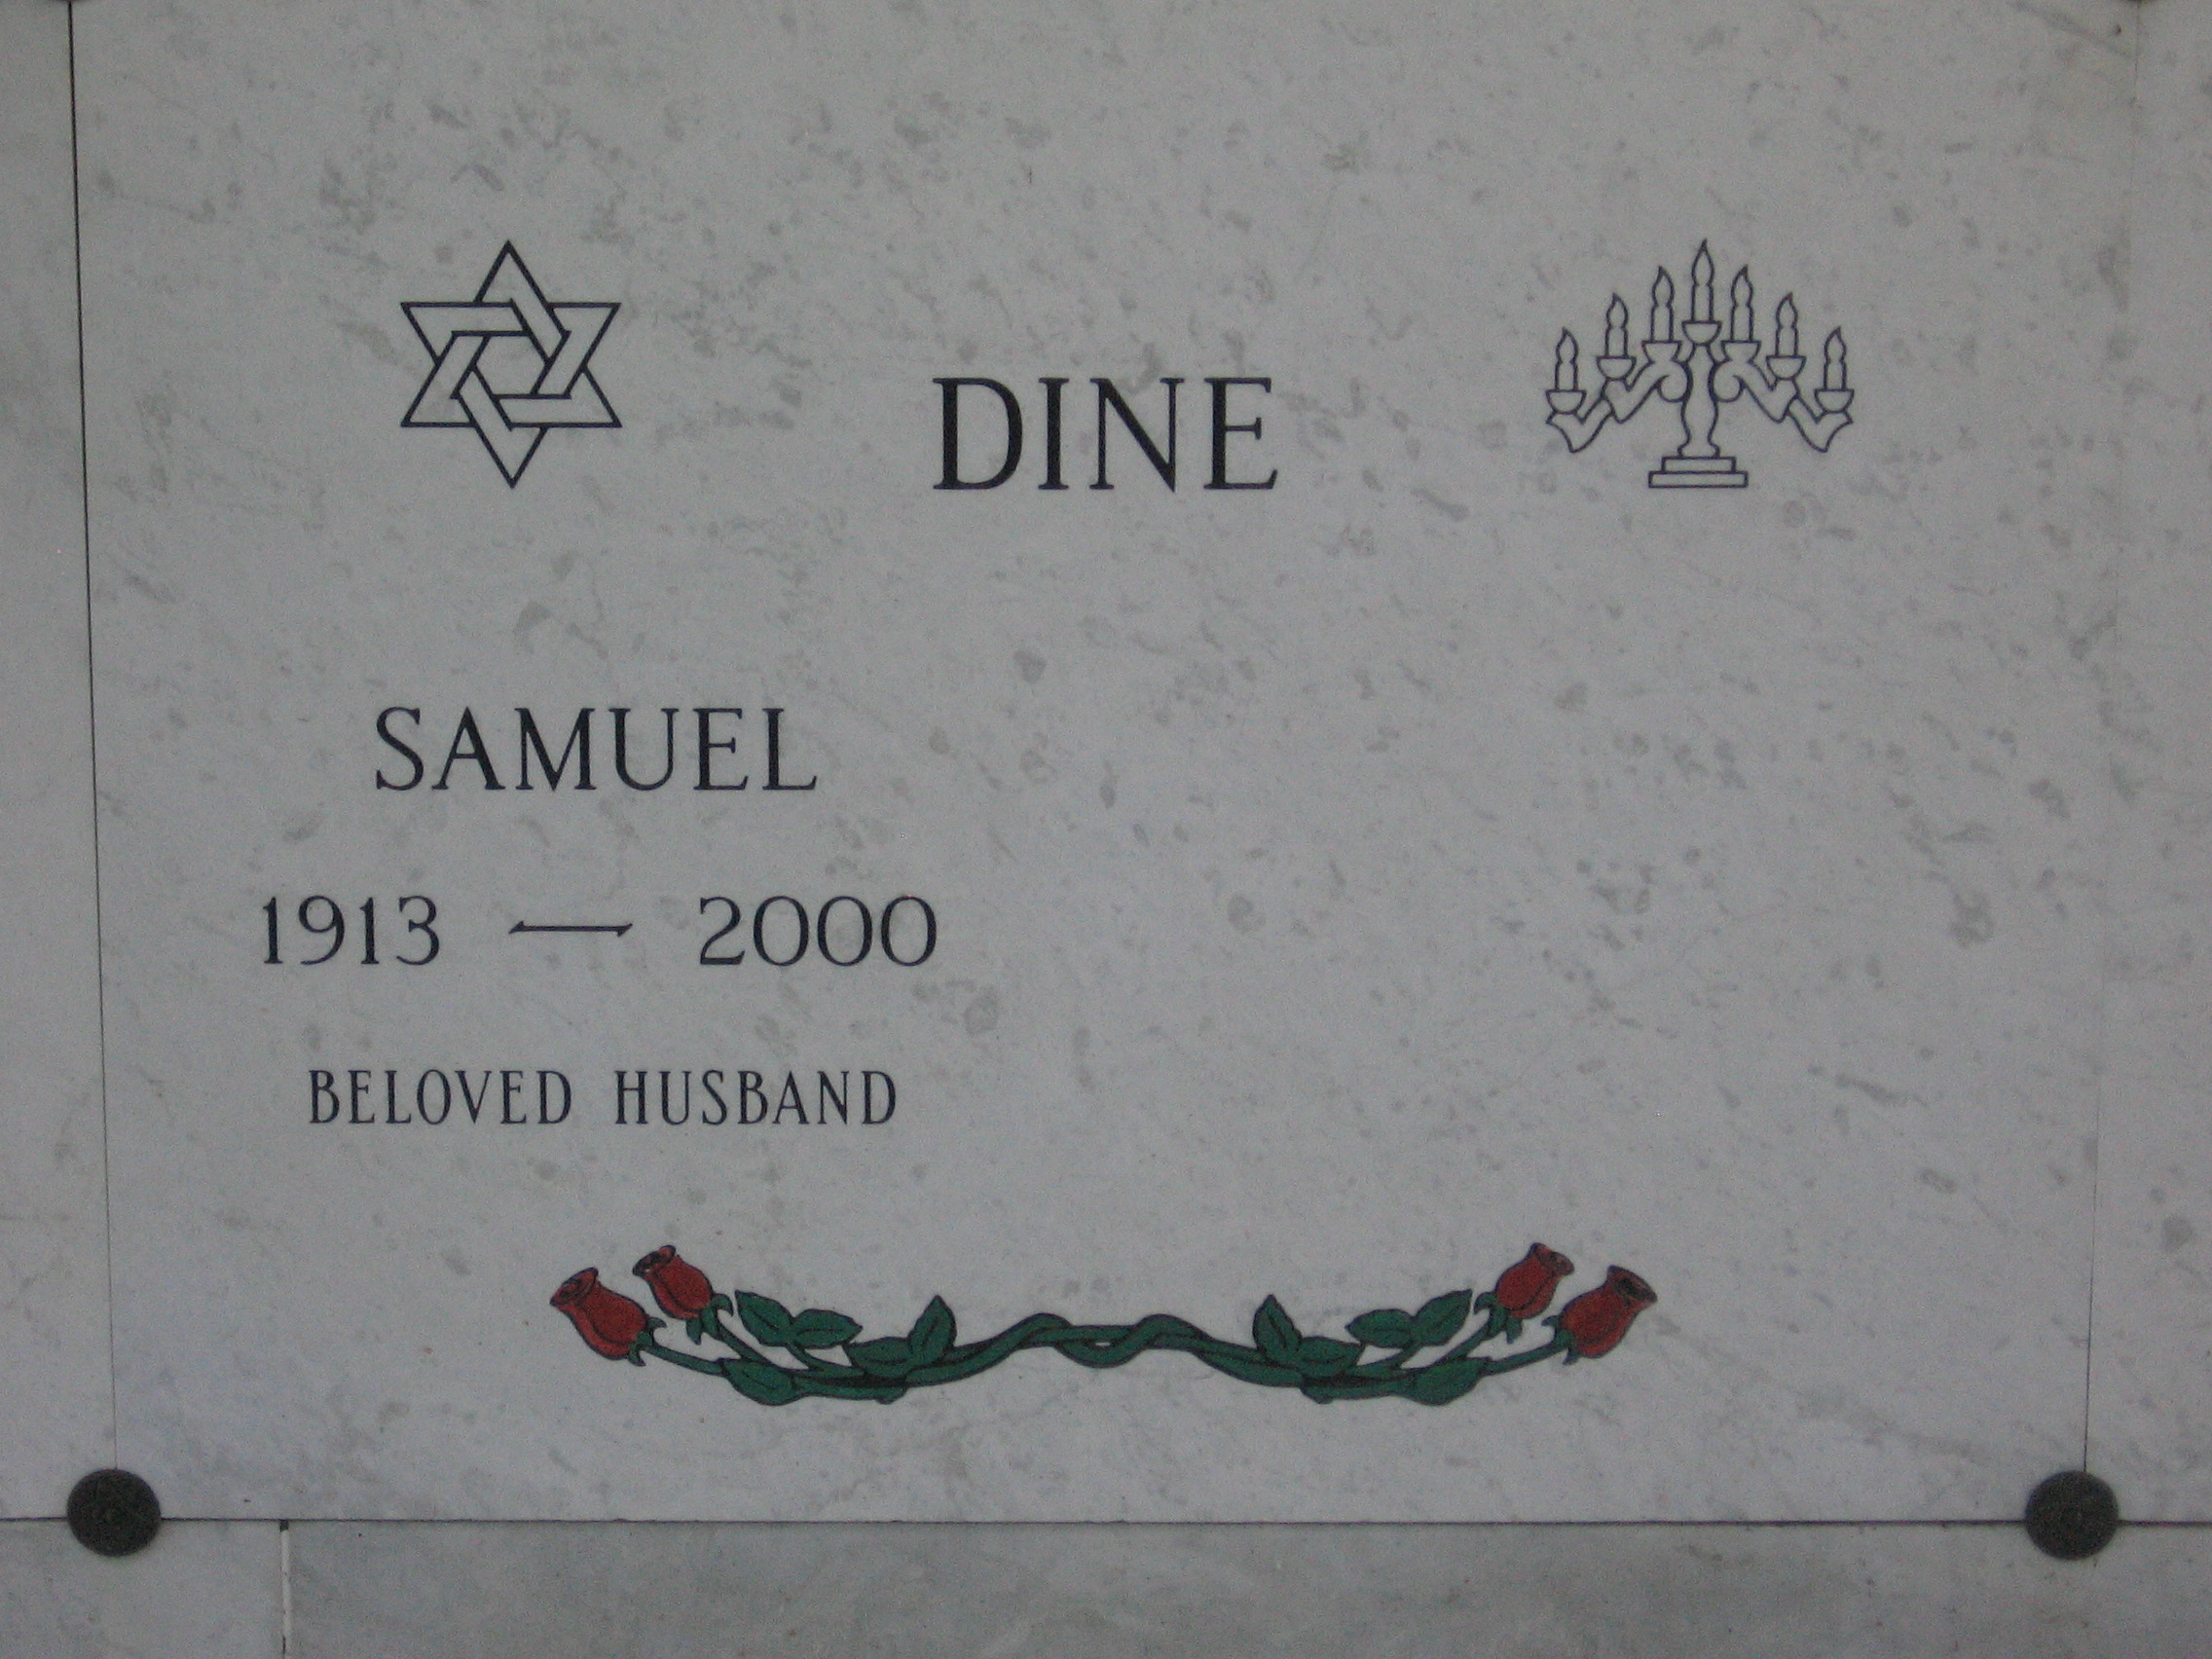 Samuel Dine